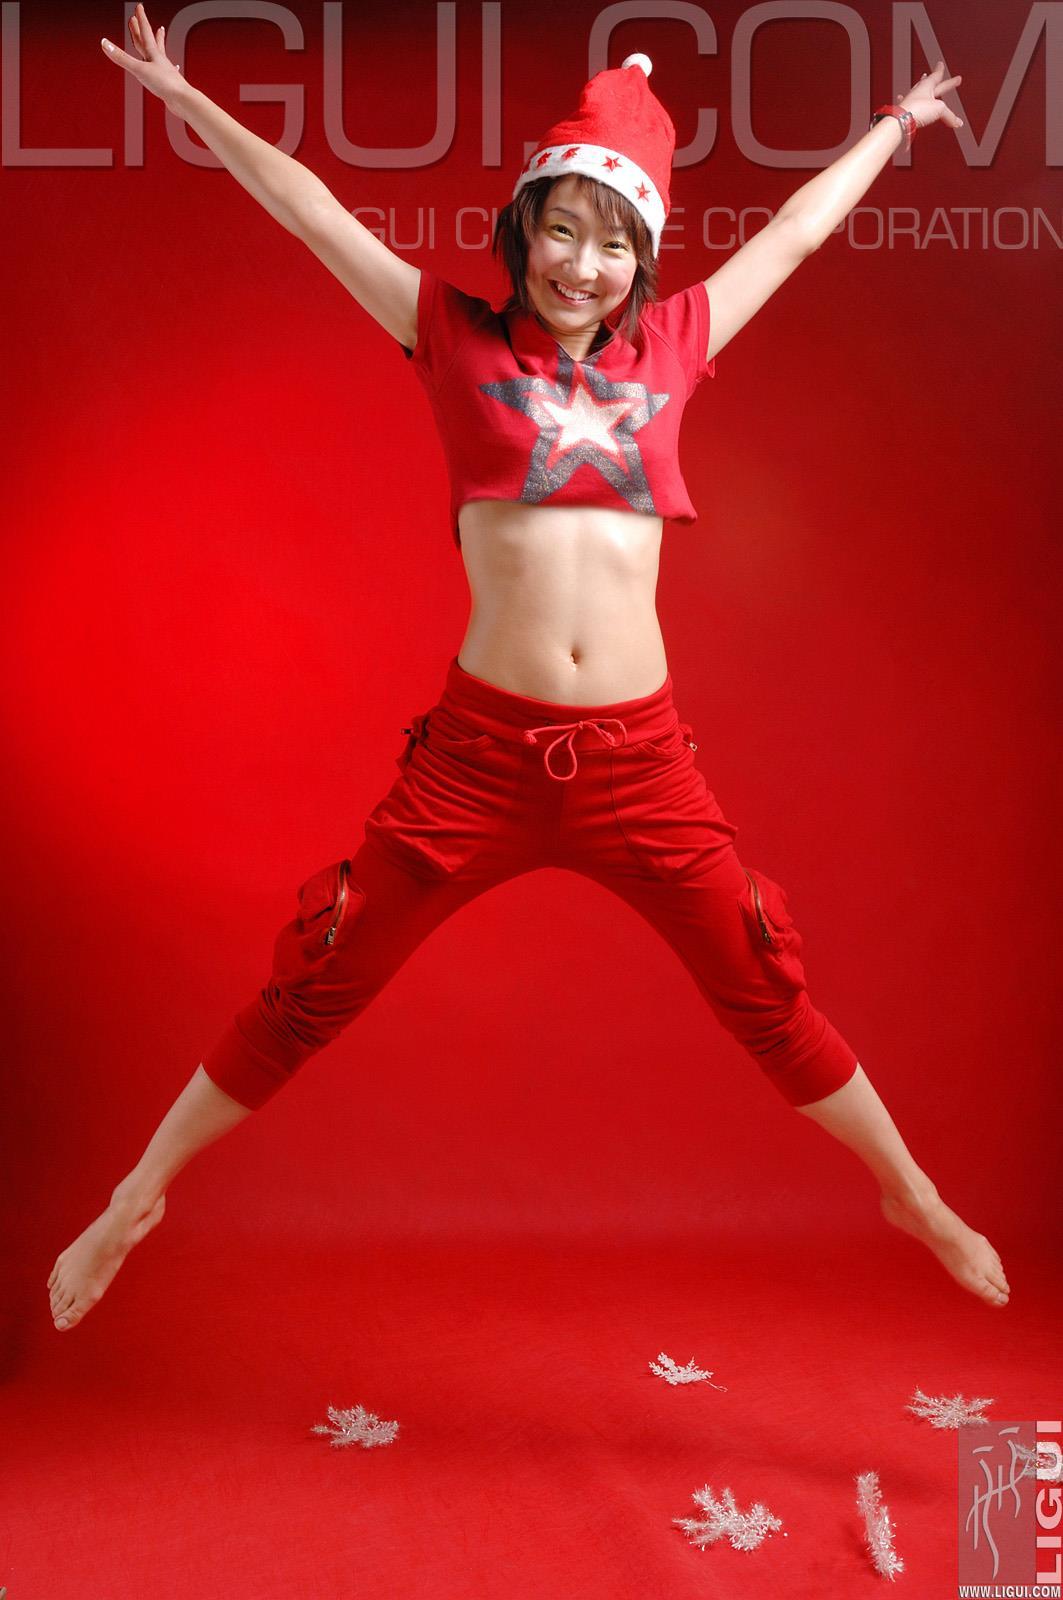 [Ligui丽柜会所]2006-12-24 圣诞女郎 Kelly 红色短袖加红色短裤性感私房写真集,